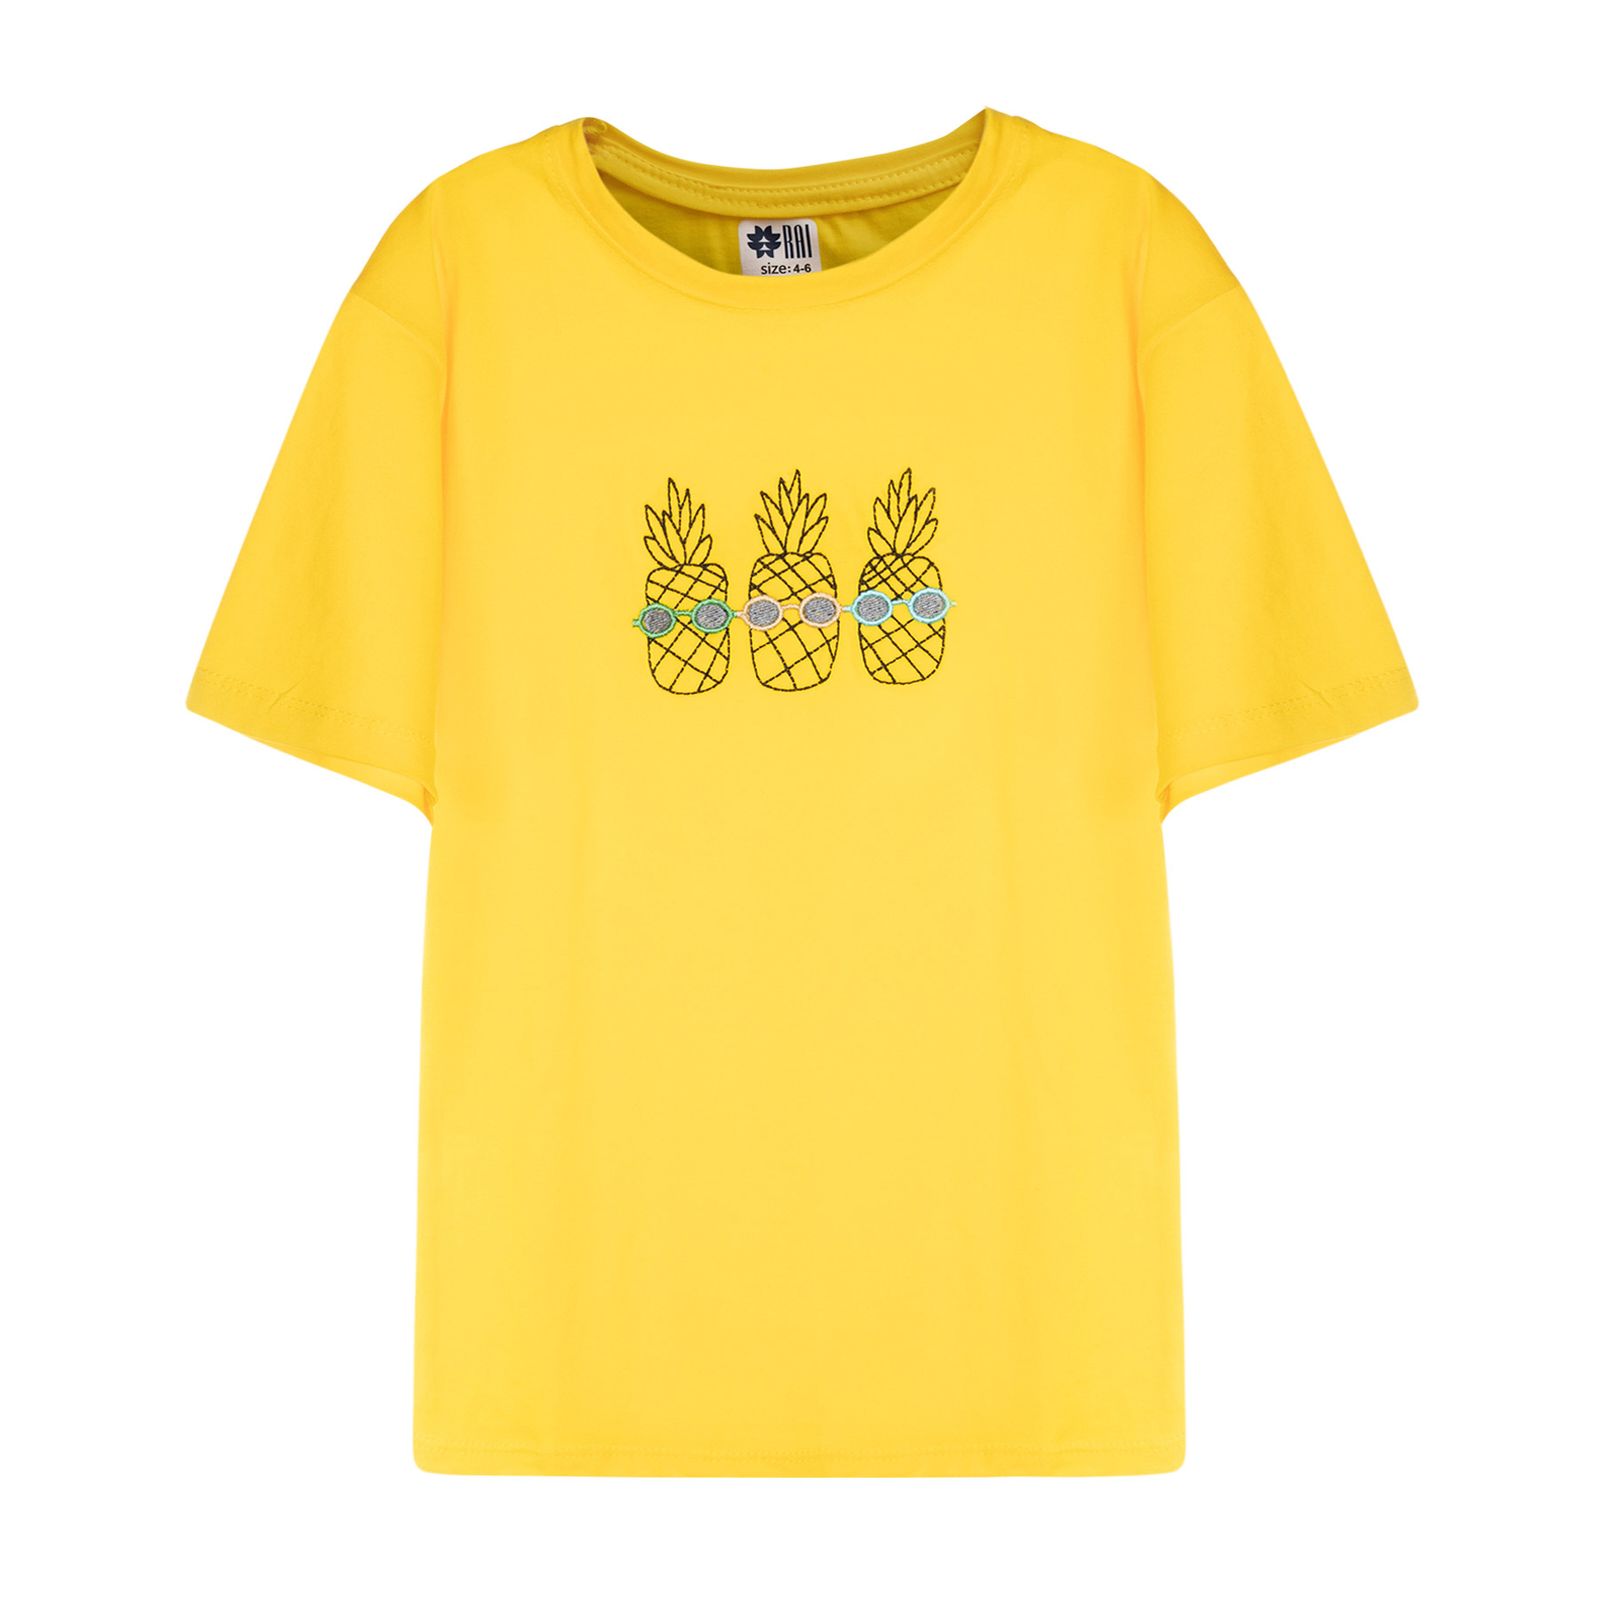 تی شرت آستین کوتاه دخترانه مادر مدل pineapple رنگ زرد -  - 1